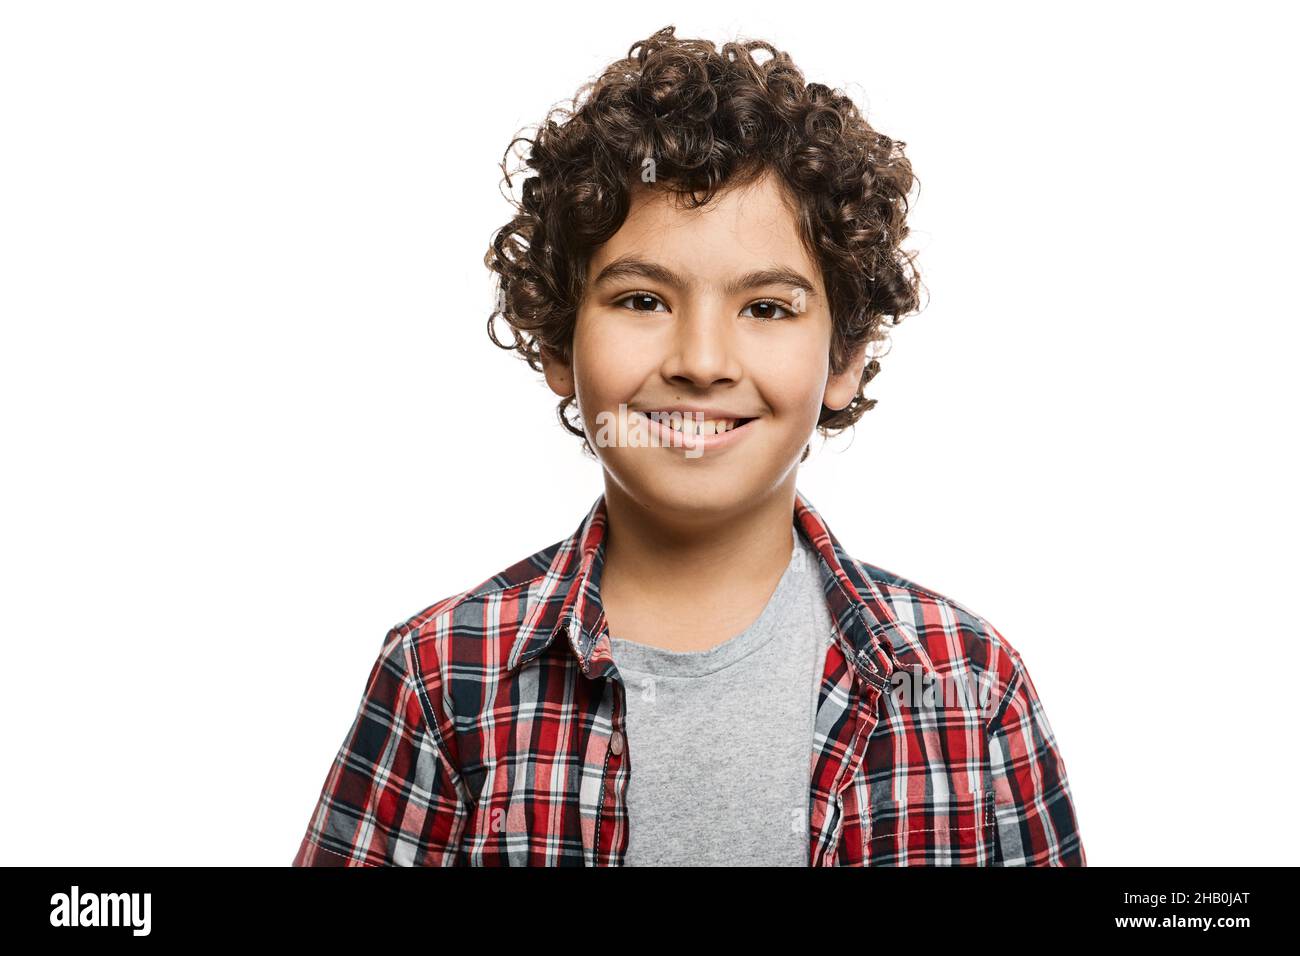 Porträt eines hübschen Jungen aus dem Nahen Osten mit einem toothy Lächeln im karierten Hemd, isoliert auf weißem Hintergrund Stockfoto